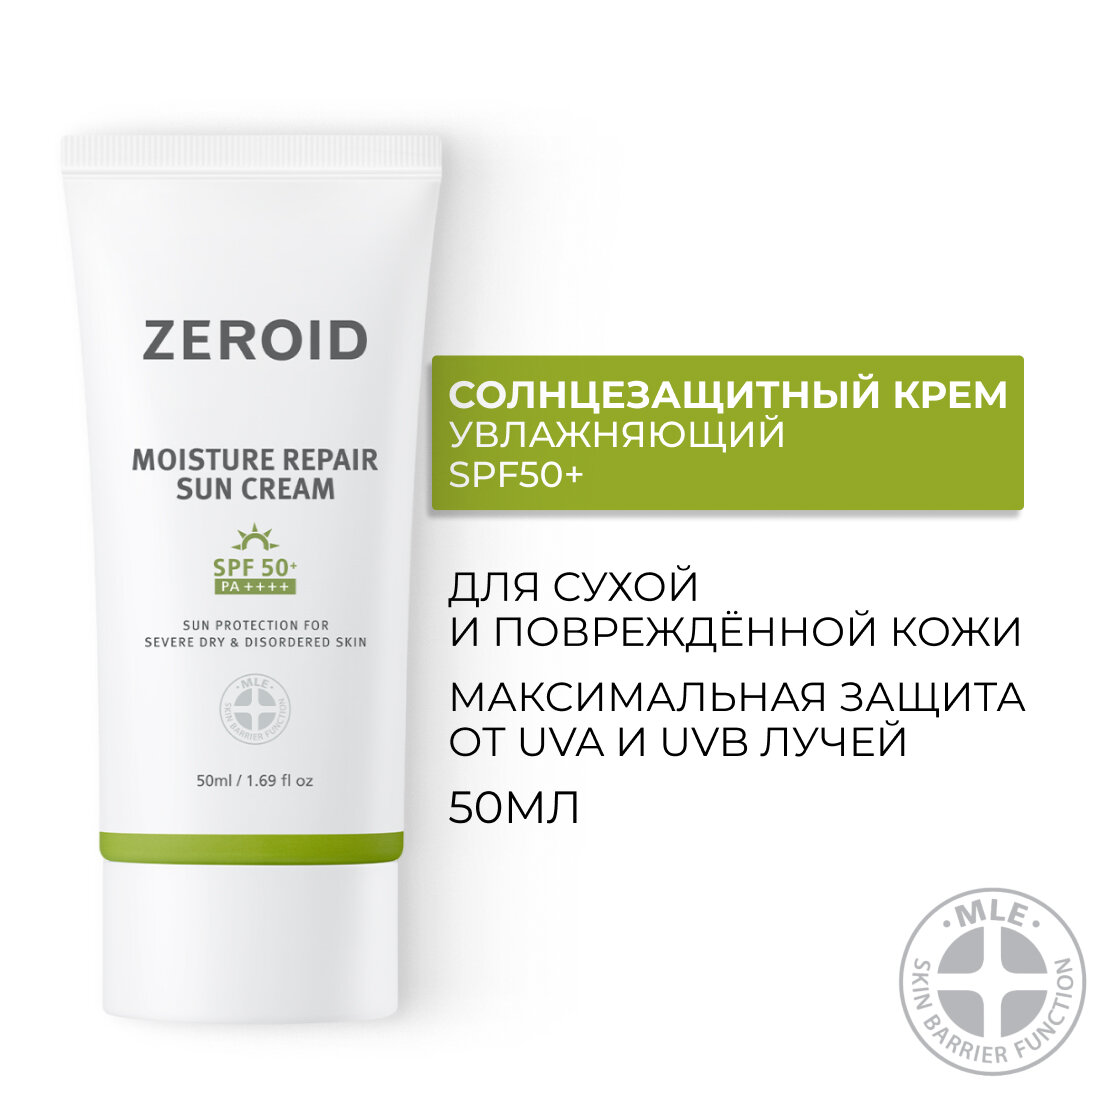 Солнцезащитный крем увлажняющий для сухой кожи SPF50+, 50 мл, ZEROID